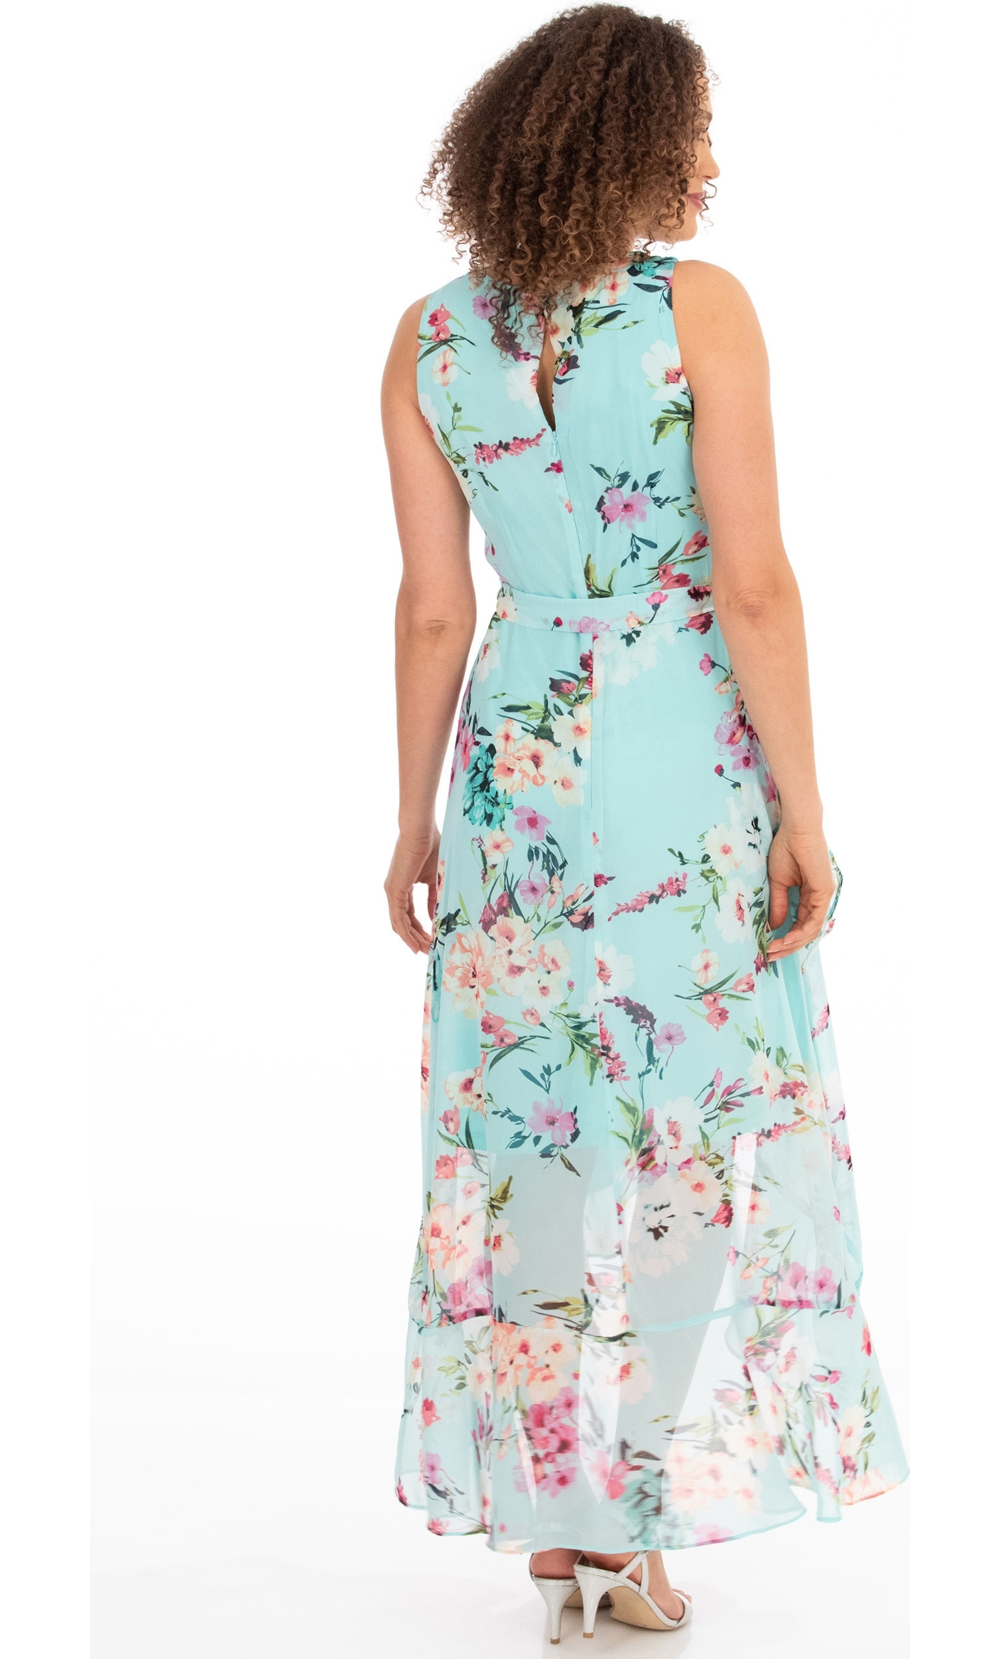 Floral Chiffon Sleeveless Dress